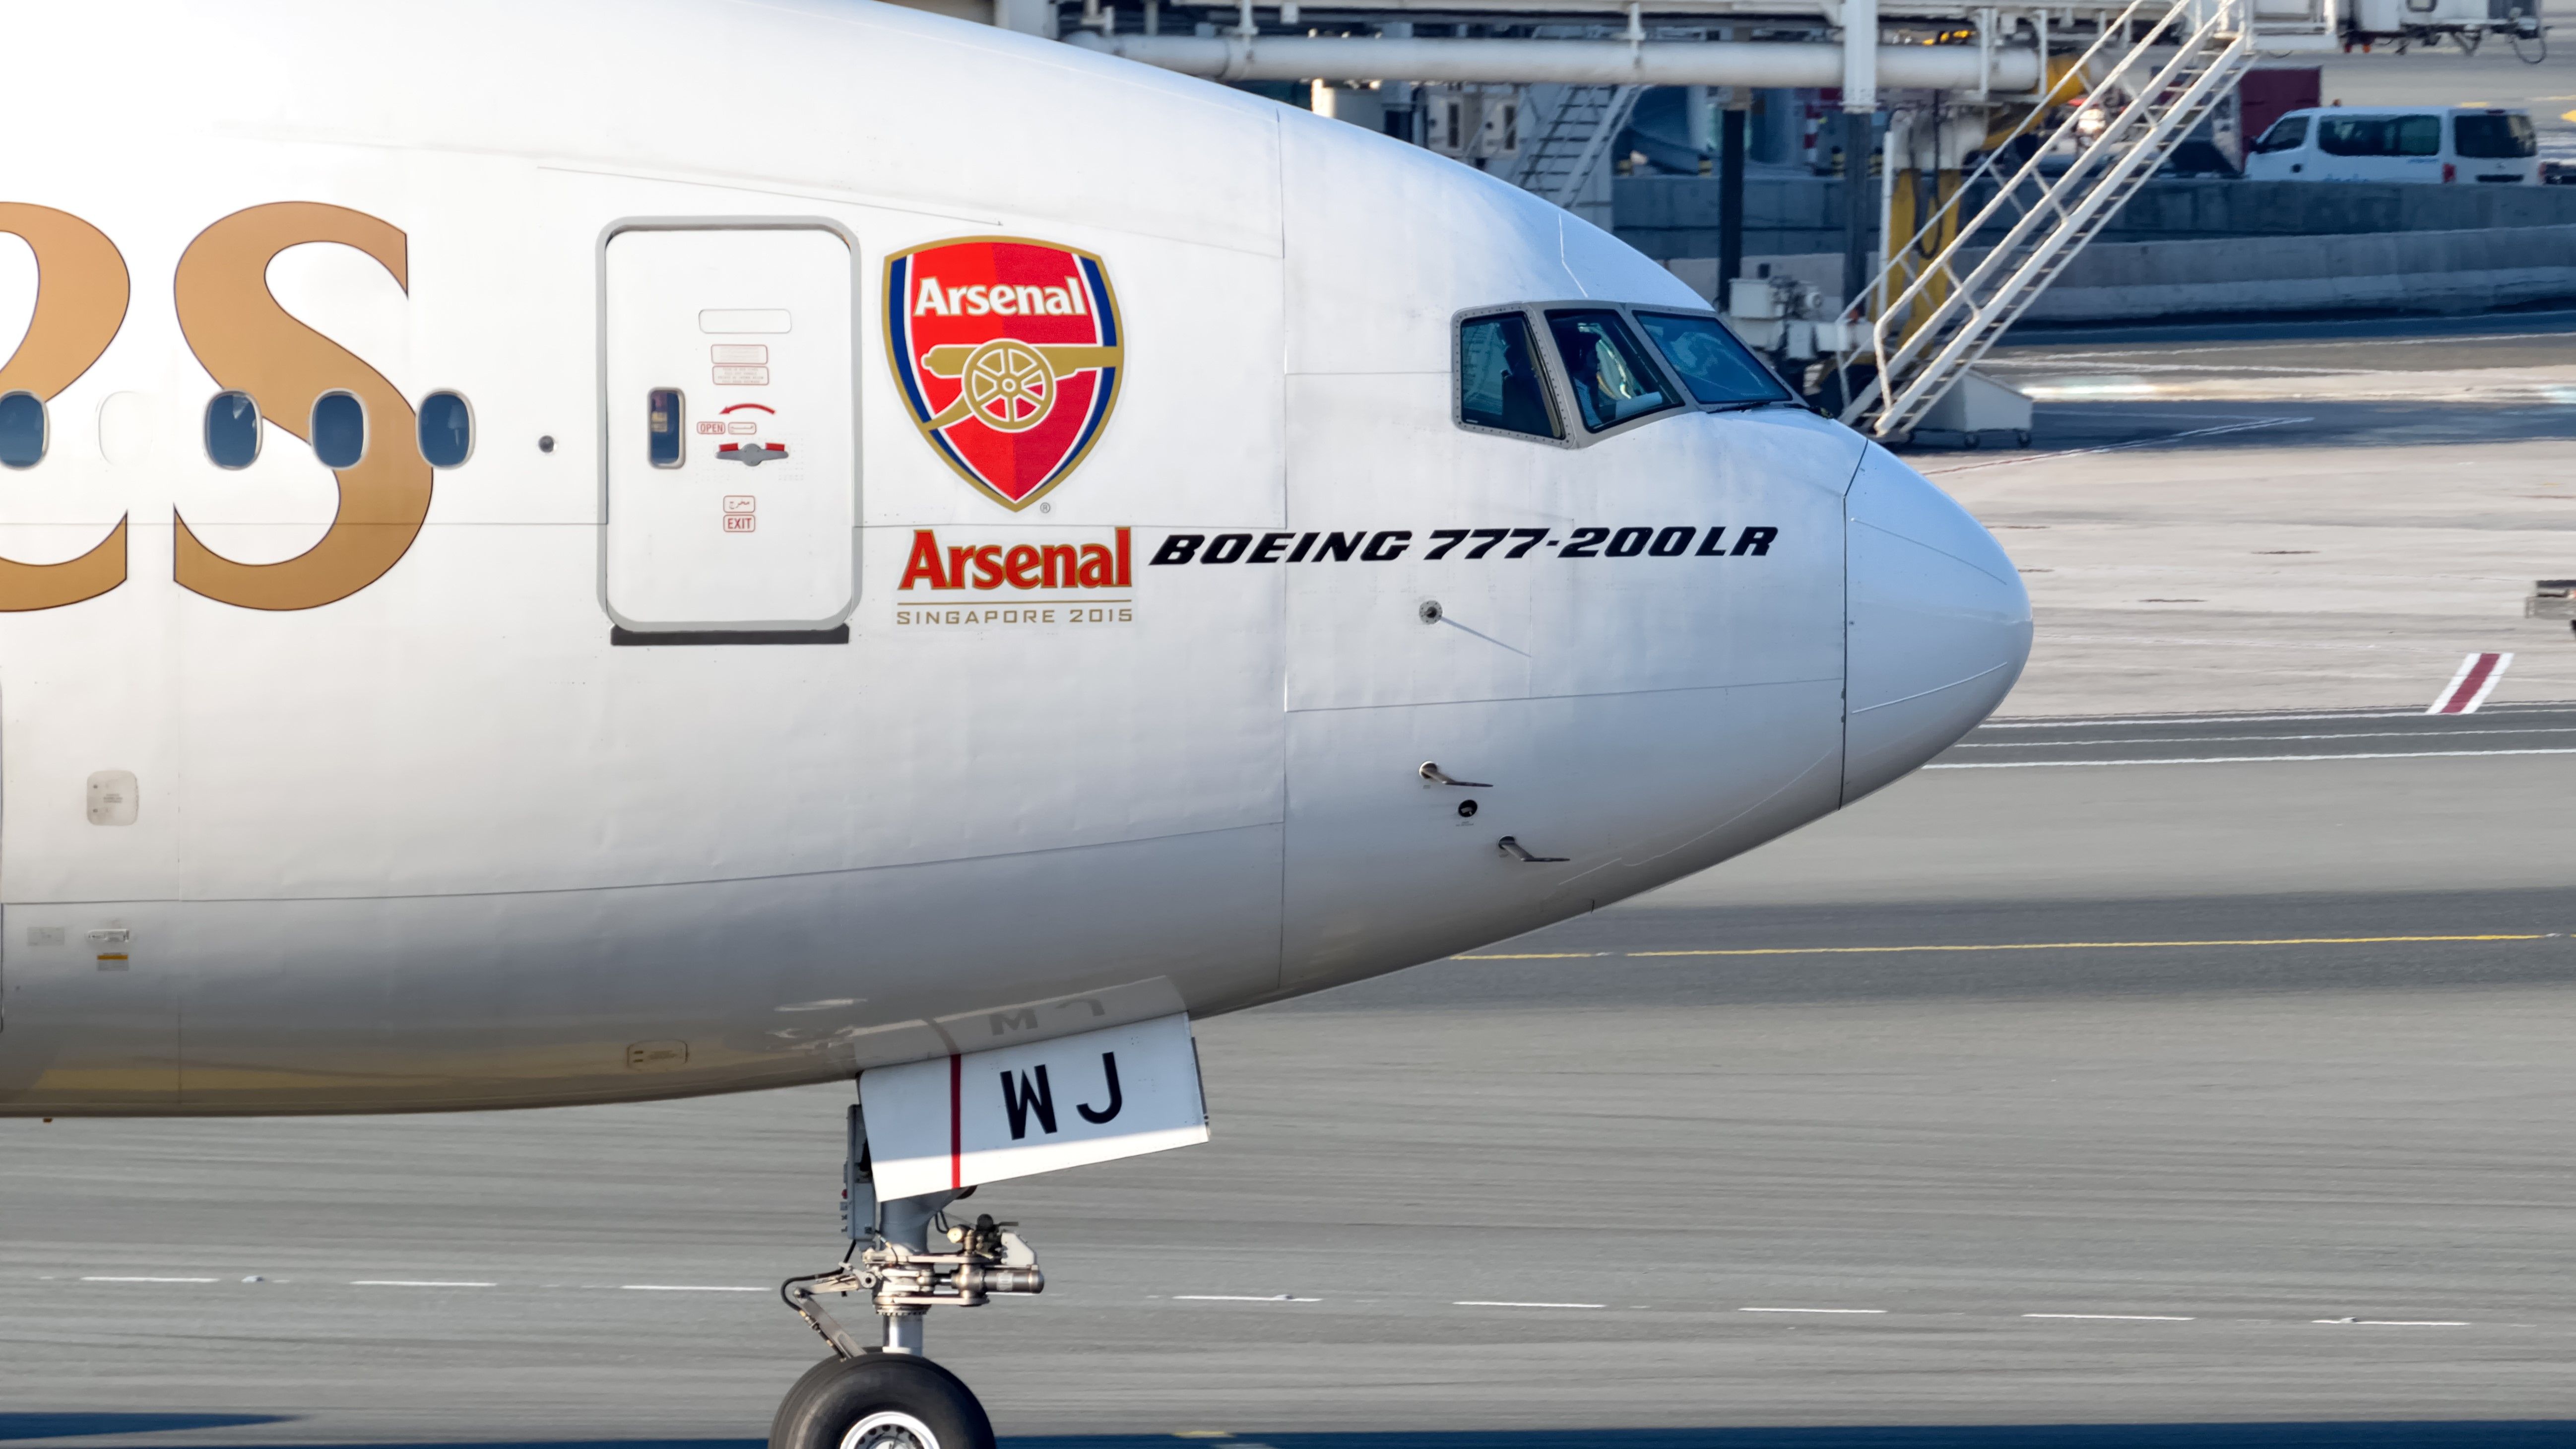 Emirates B777-300ER with Arsenal logo 